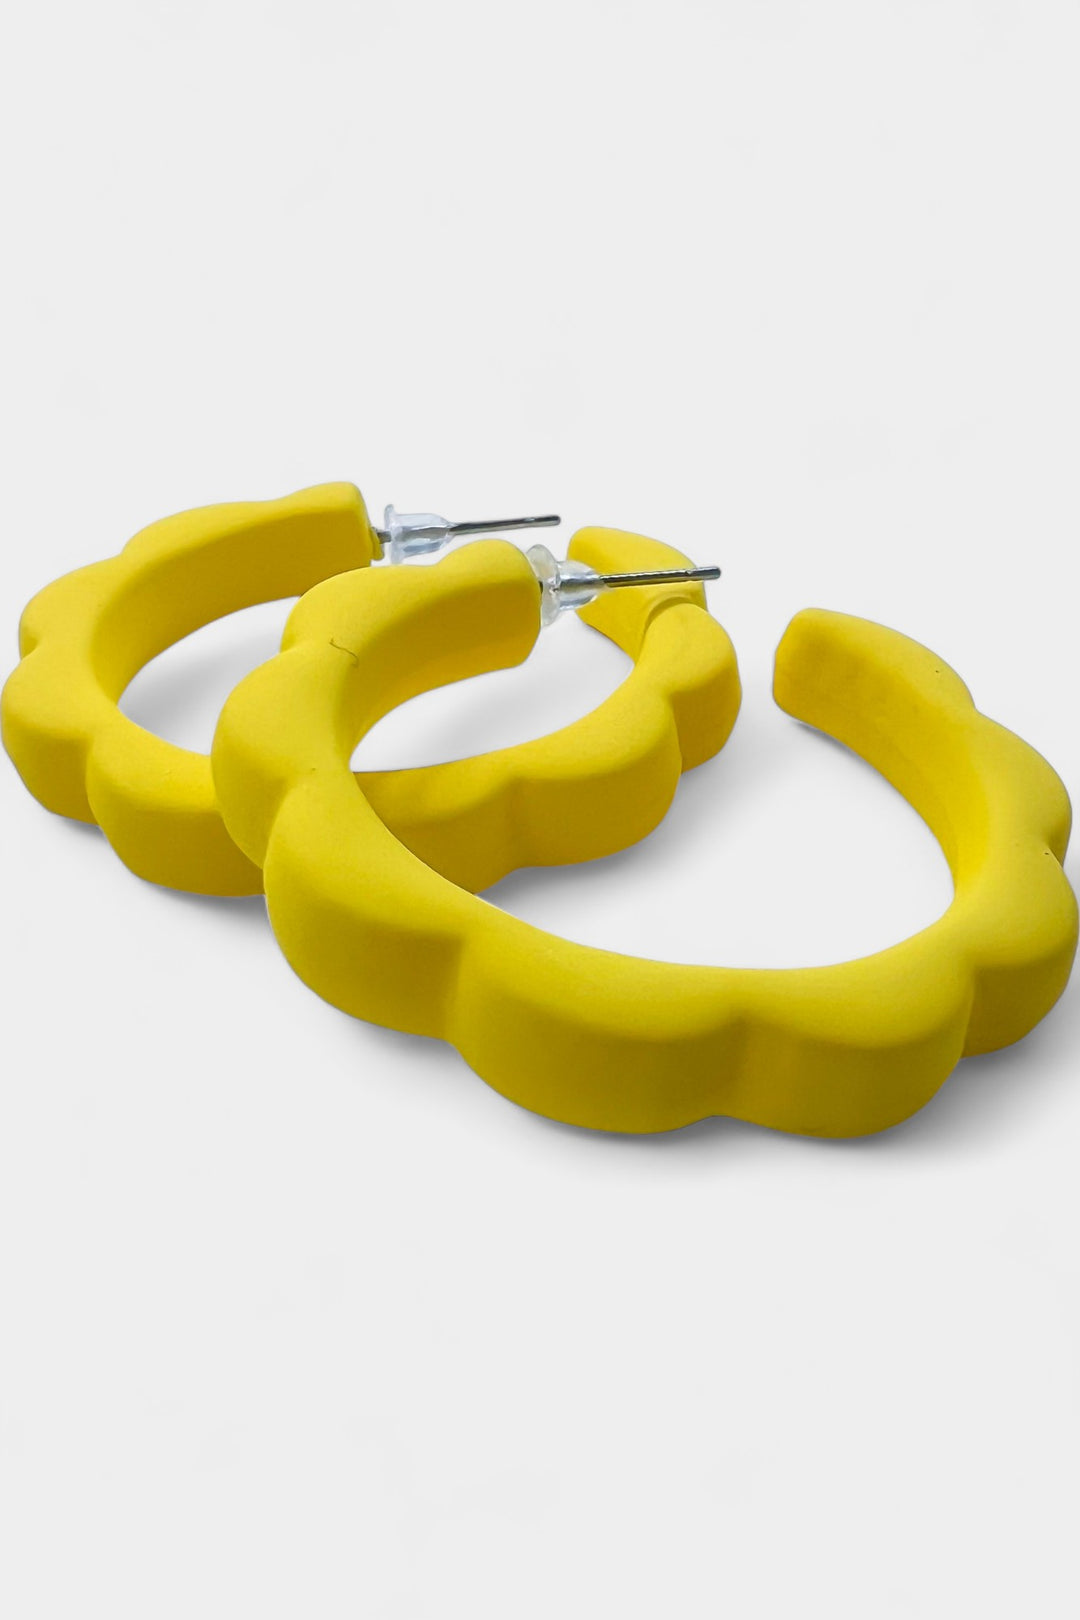 Yellow Flower Hoop Earrings